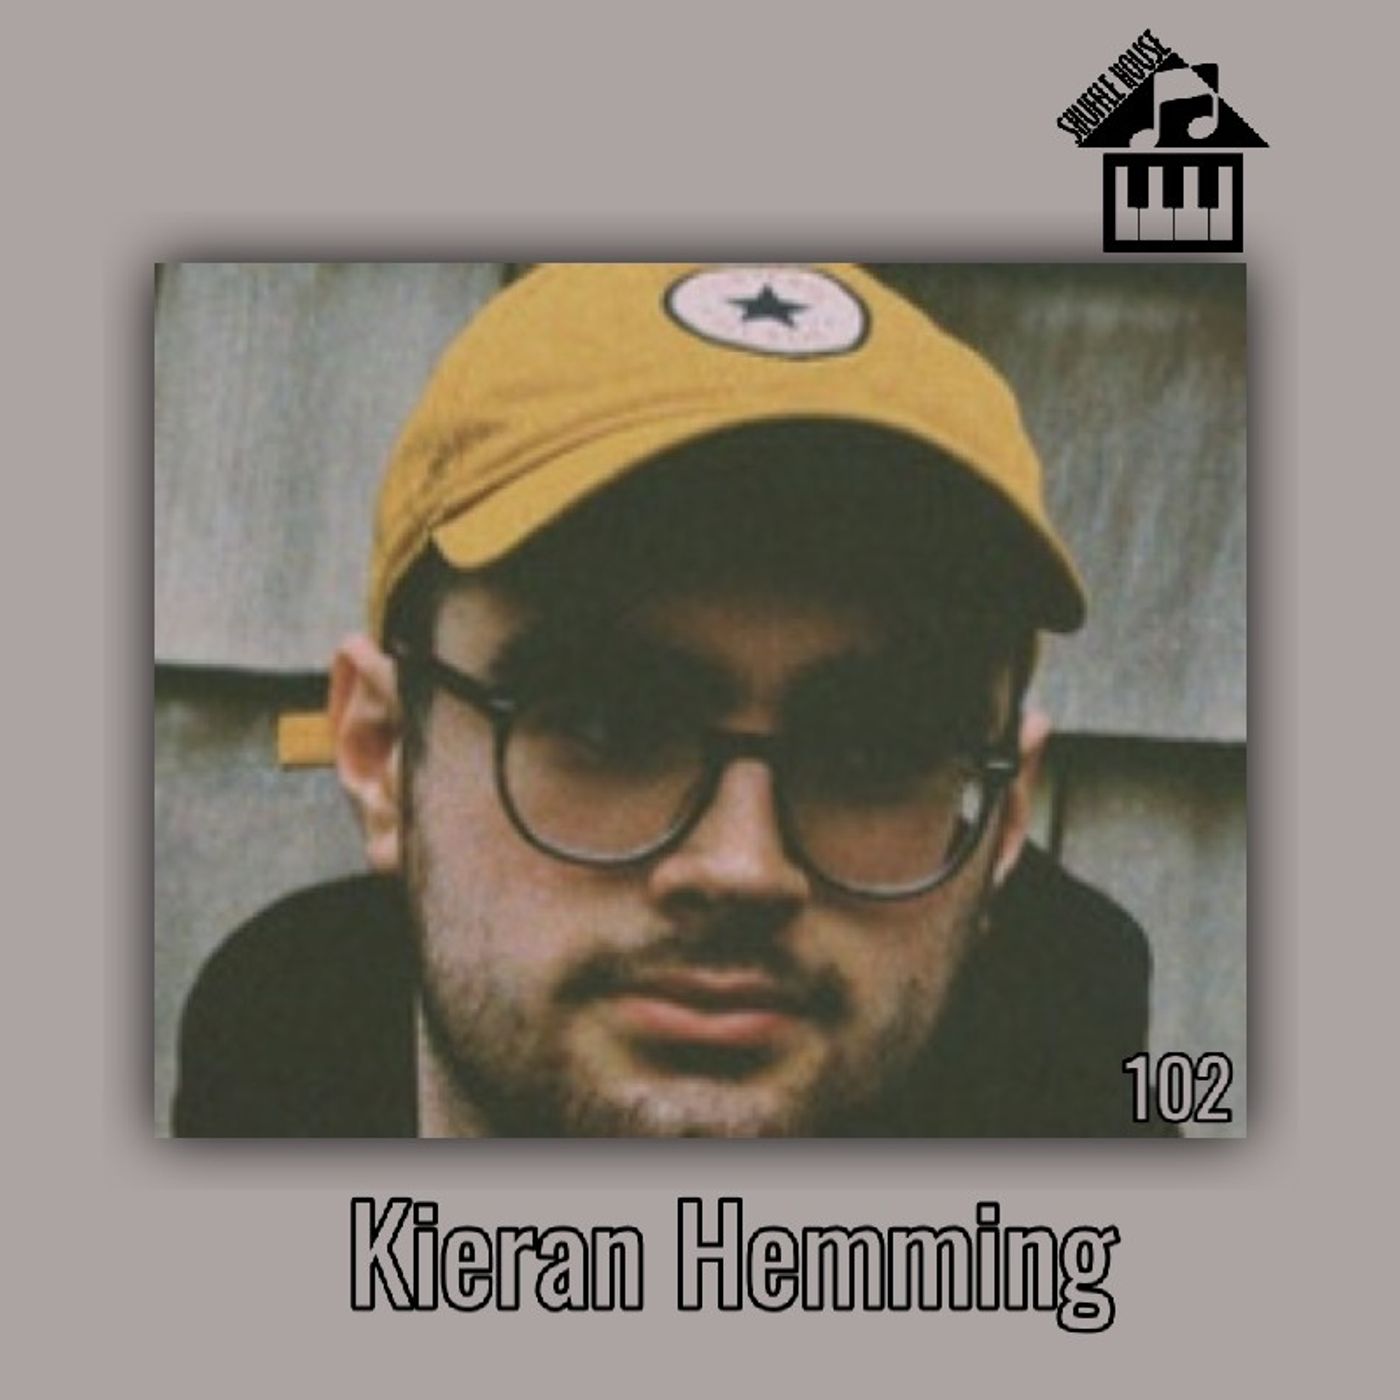 Get To Know - Kieran Hemming